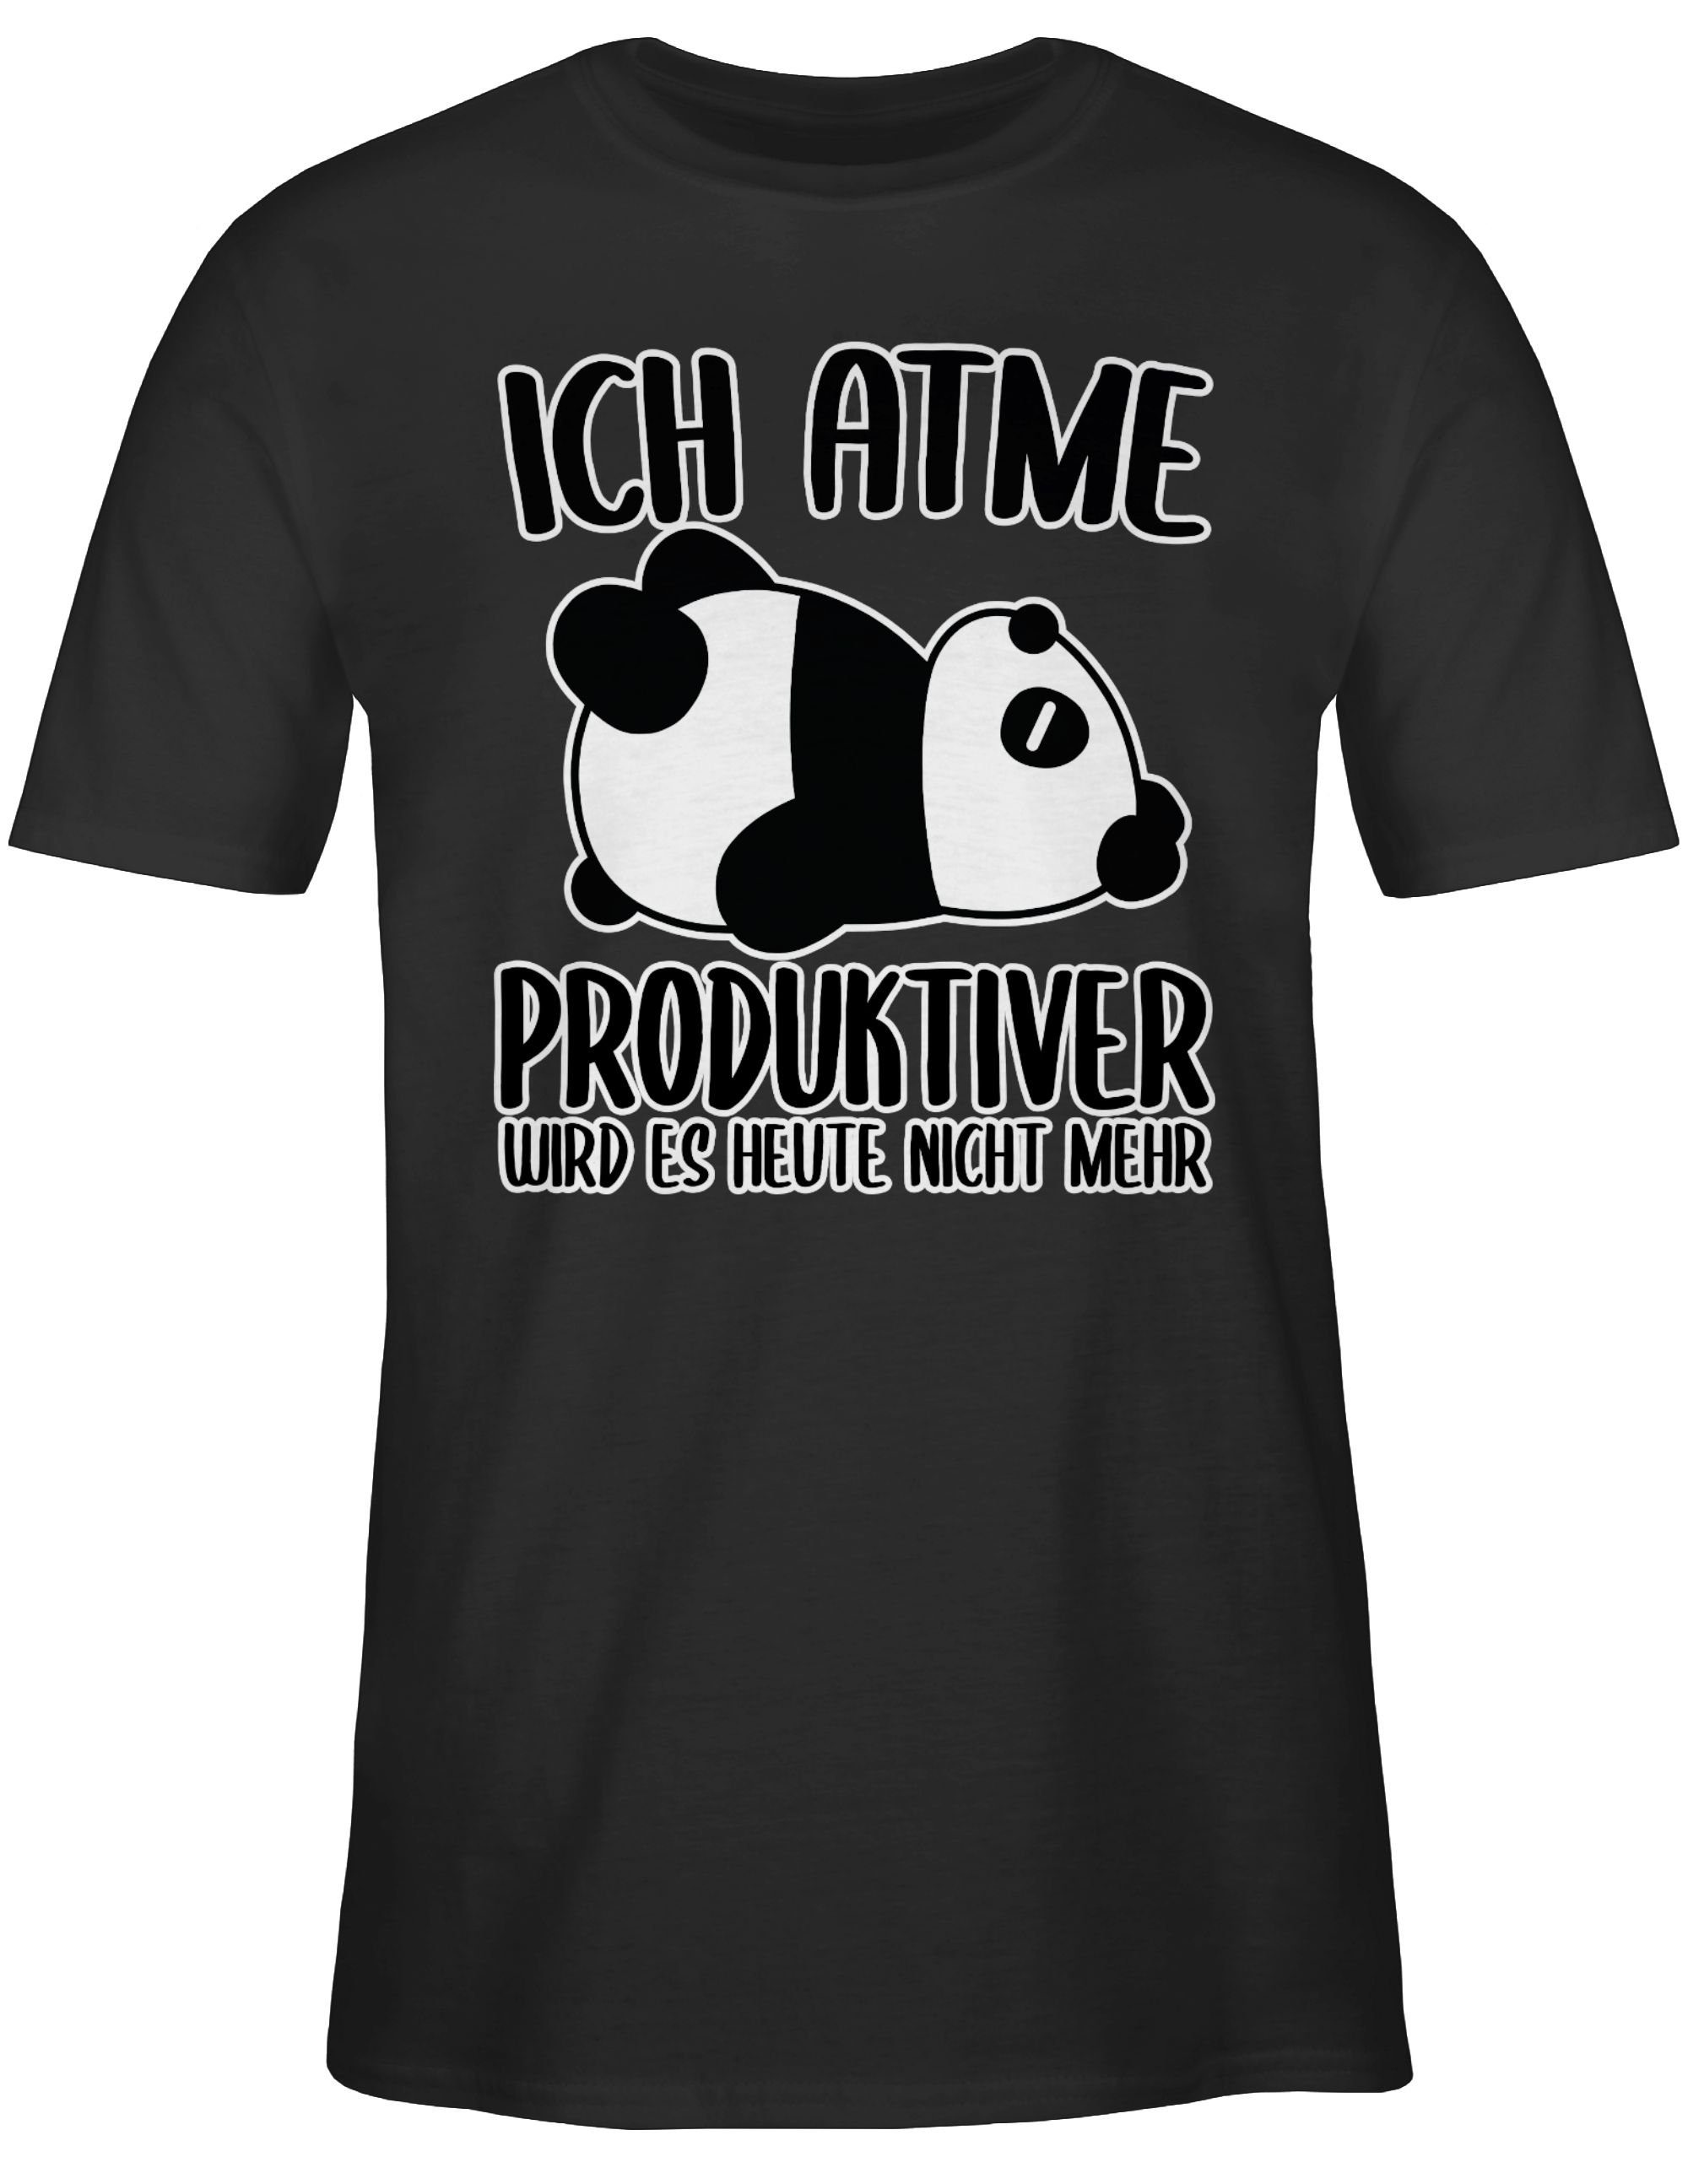 Statement es mehr Ich mit Spruch atme Schwarz nicht T-Shirt 01 weiß produktiver Shirtracer Panda mit Sprüche - wird